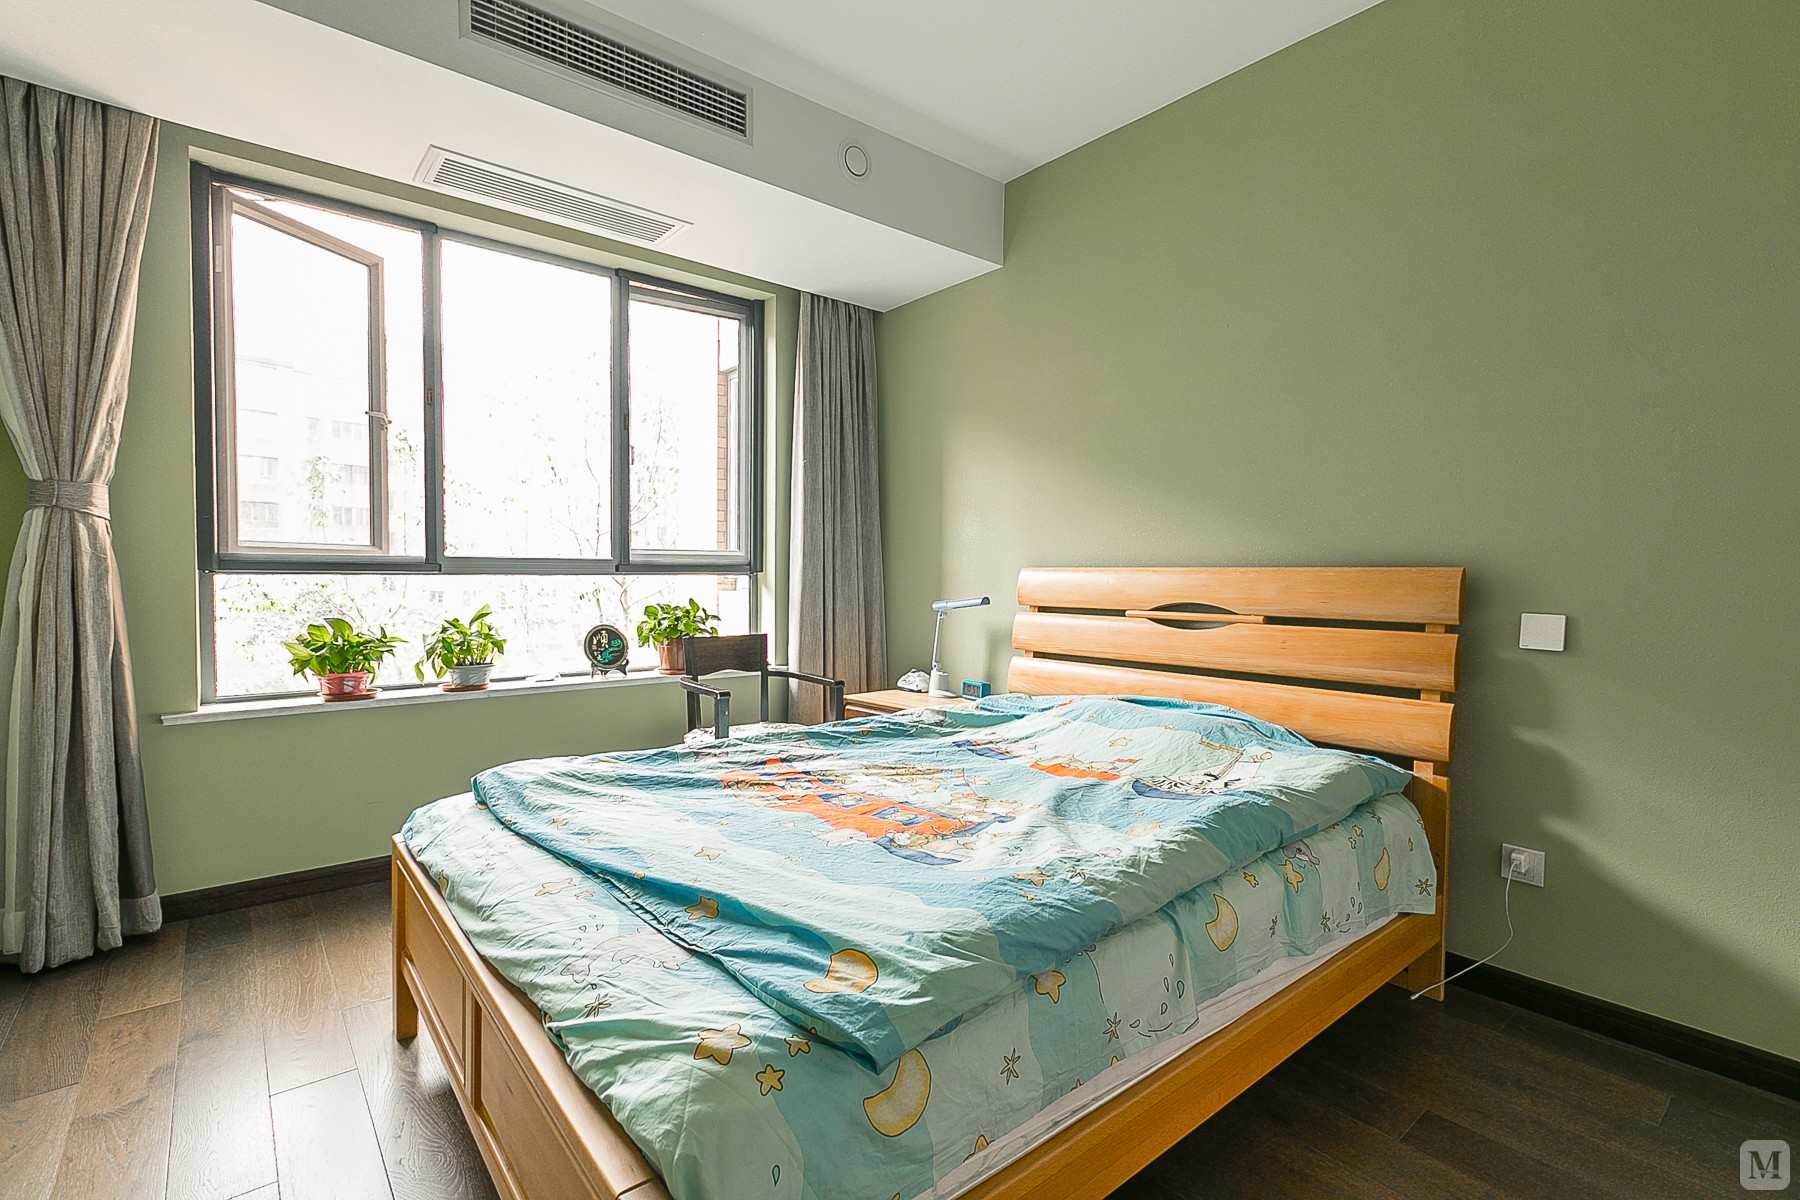 因为考虑到儿童房，环保放在了第一位，墙面选择硅藻泥，绿色作为主色调，搭配了北欧风的家具。整个儿童房十分的清新。